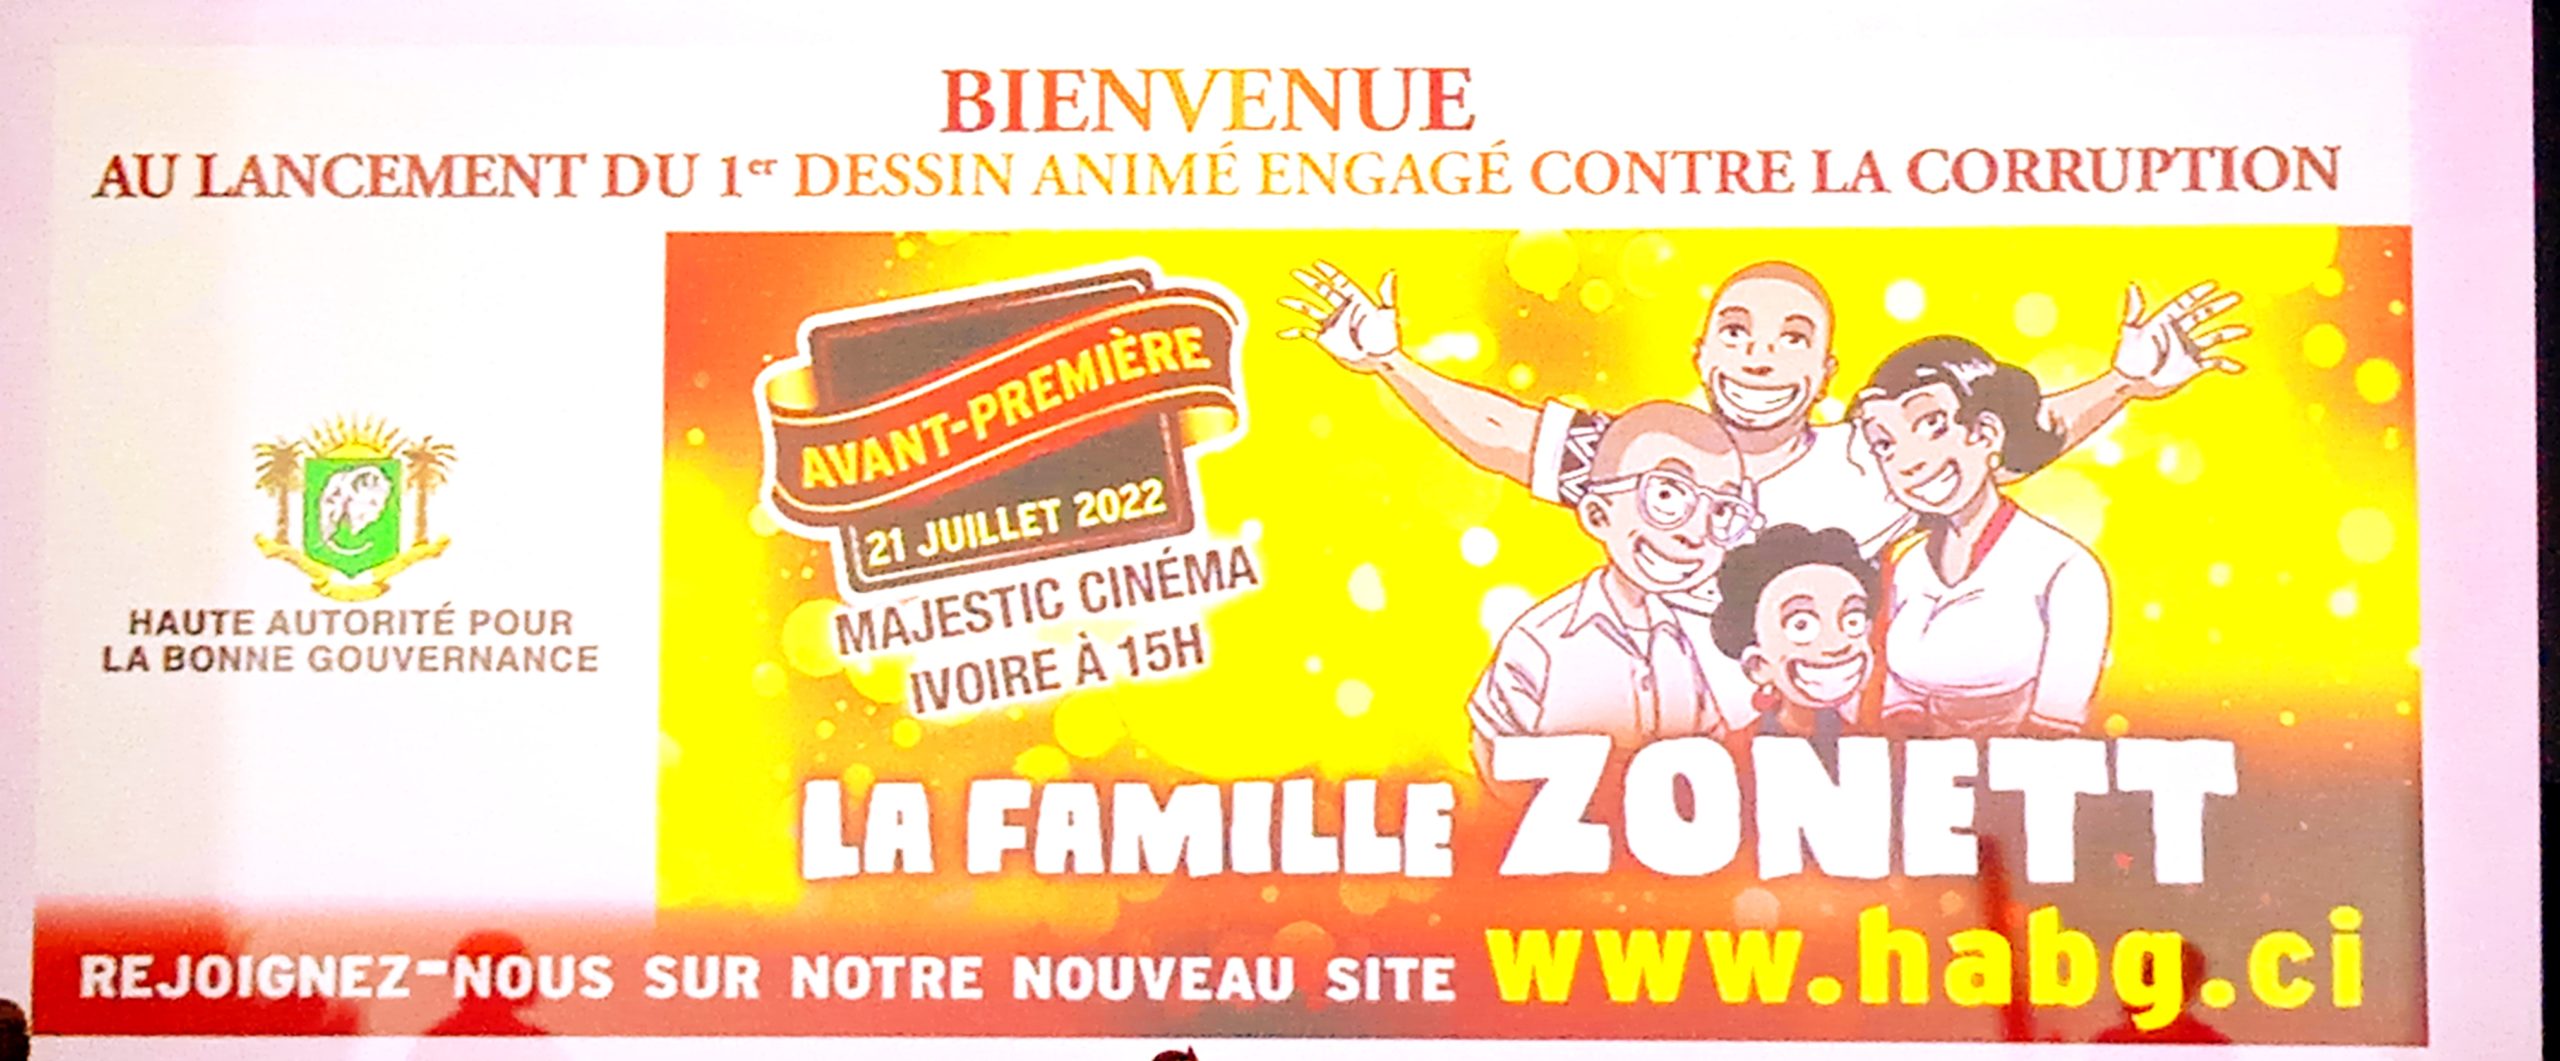 Côte d’Ivoire/HABG:lancement du 1er dessin animé engagé contre la Corruption «La Famille ZONETT» au cinéma Majestic du Sofitel Hôtel Ivoire et de la présentation du nouveau site internet de la HABG (www.habg.ci)